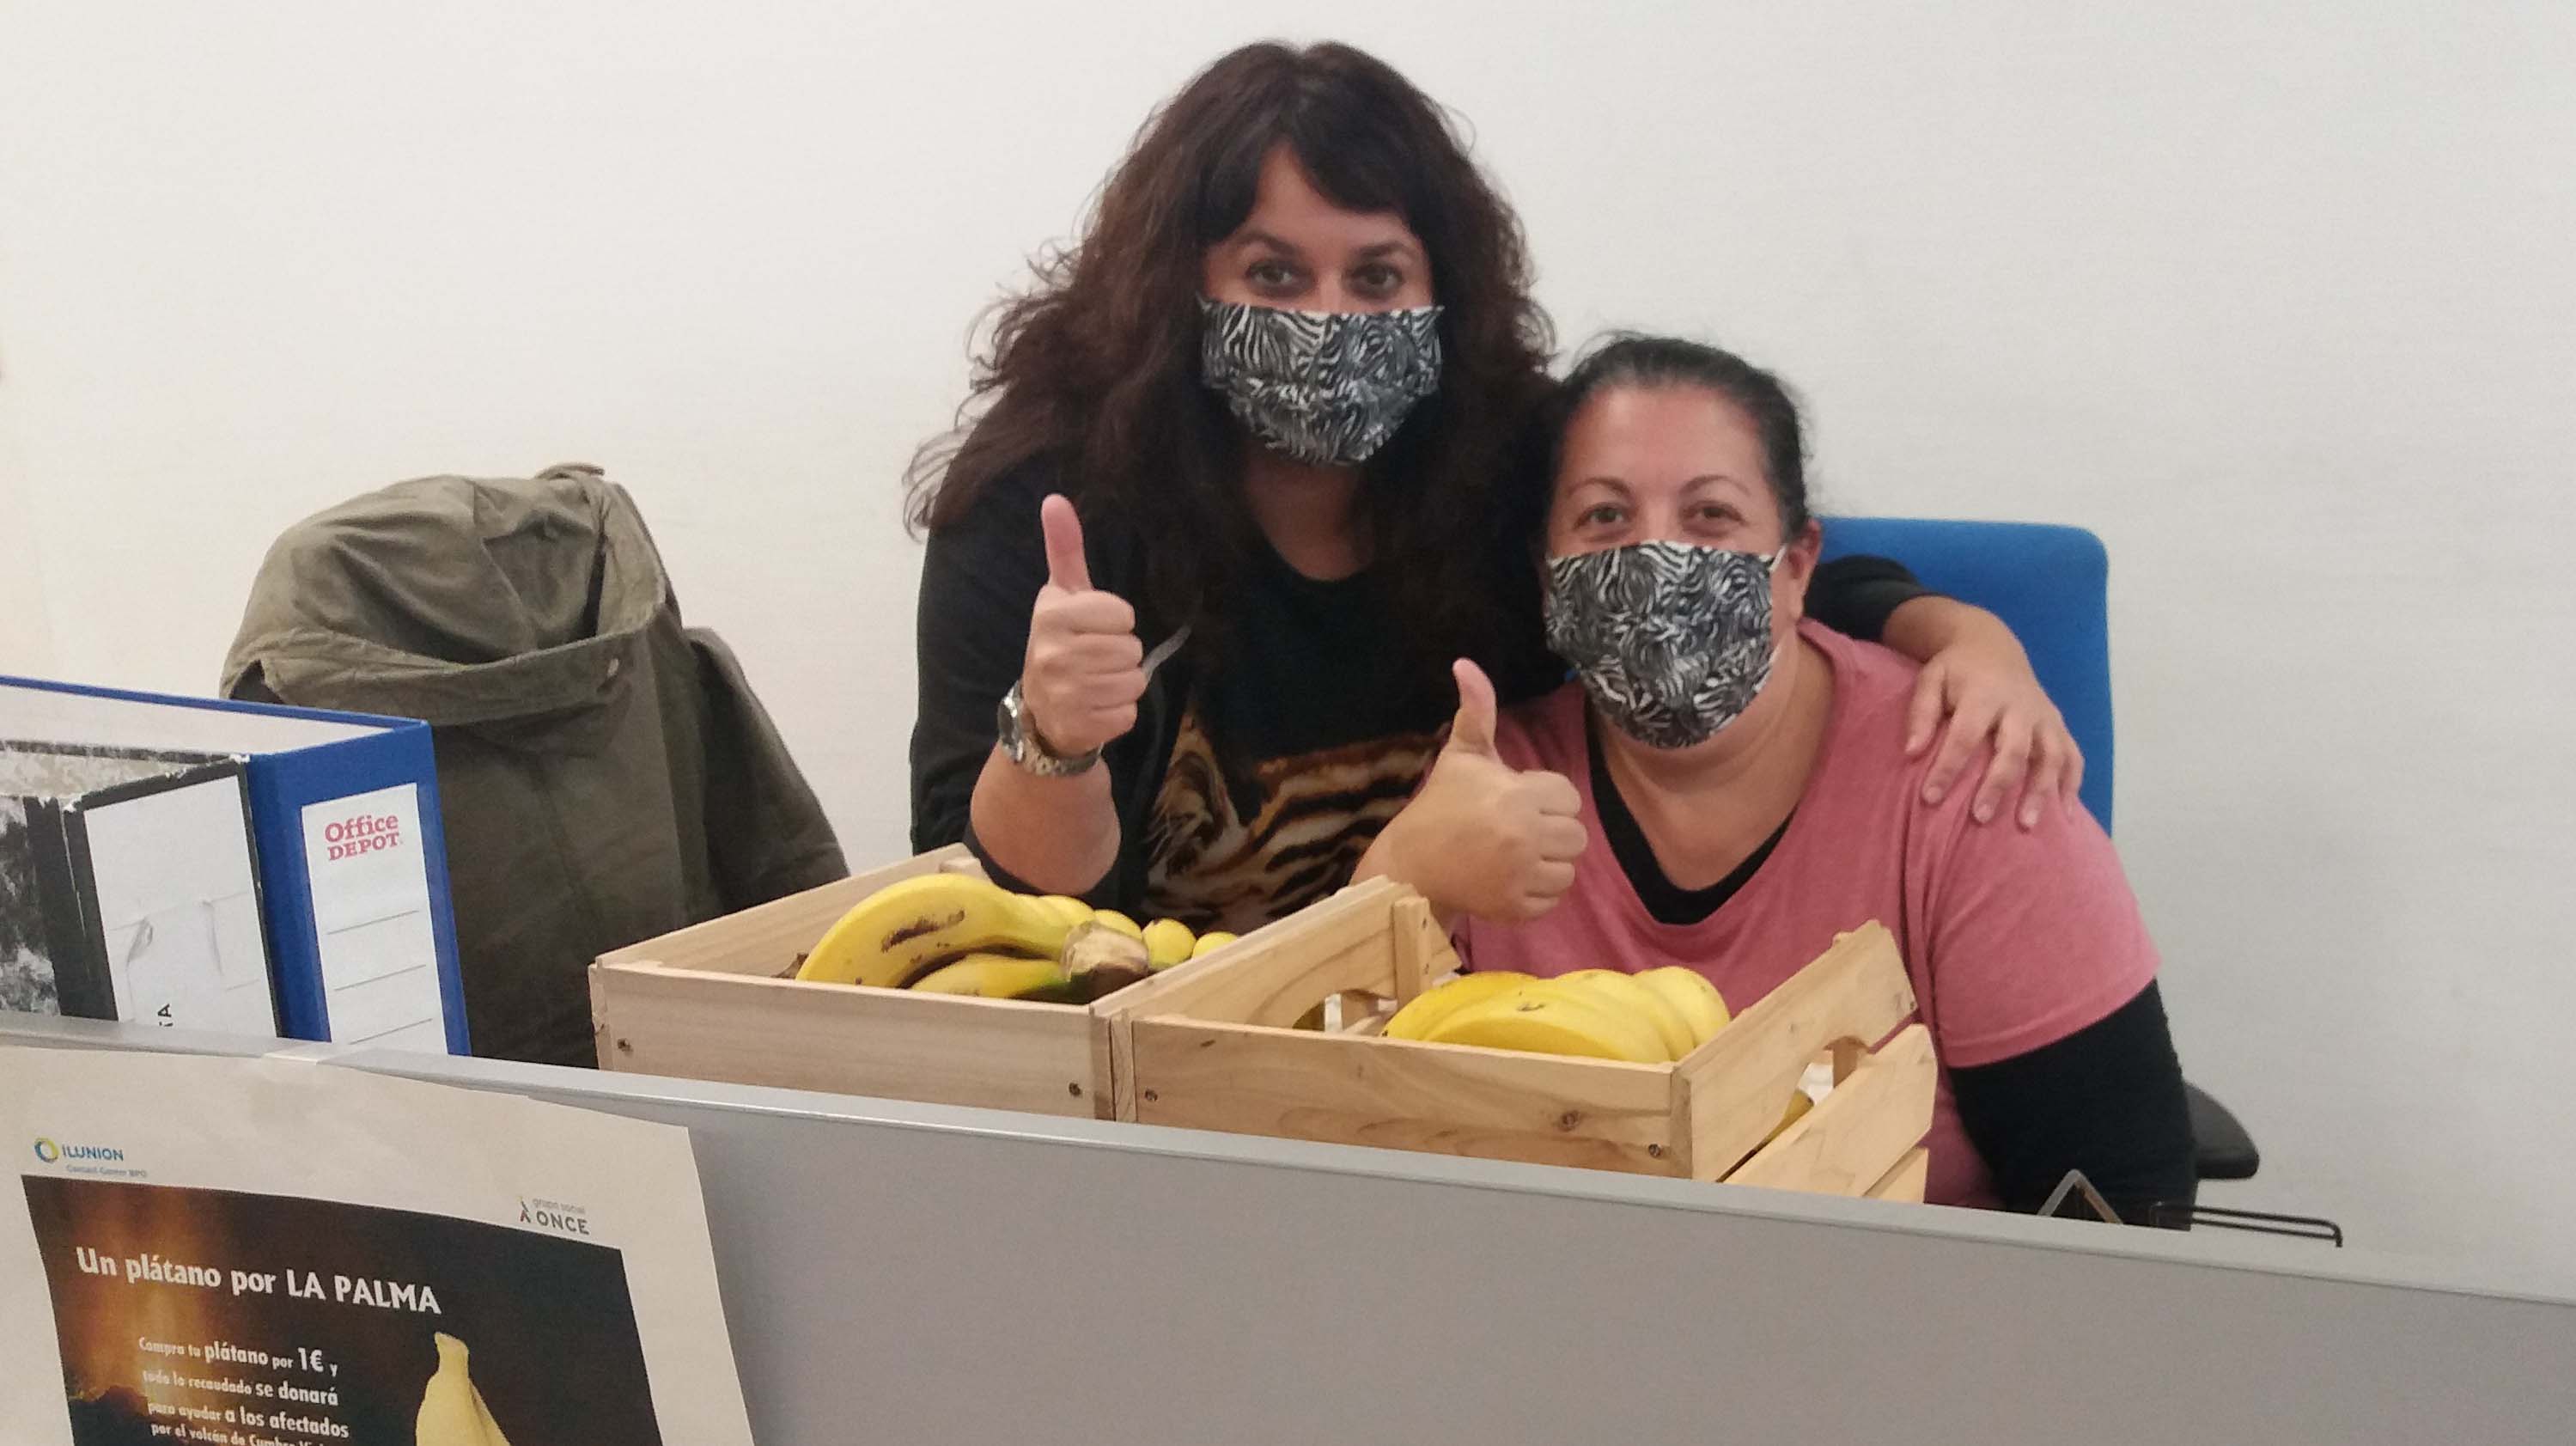 El contact center de ILUNION lanza ‘Un plátano por La Palma’, para ayudar a los afectados de Cumbre Vieja